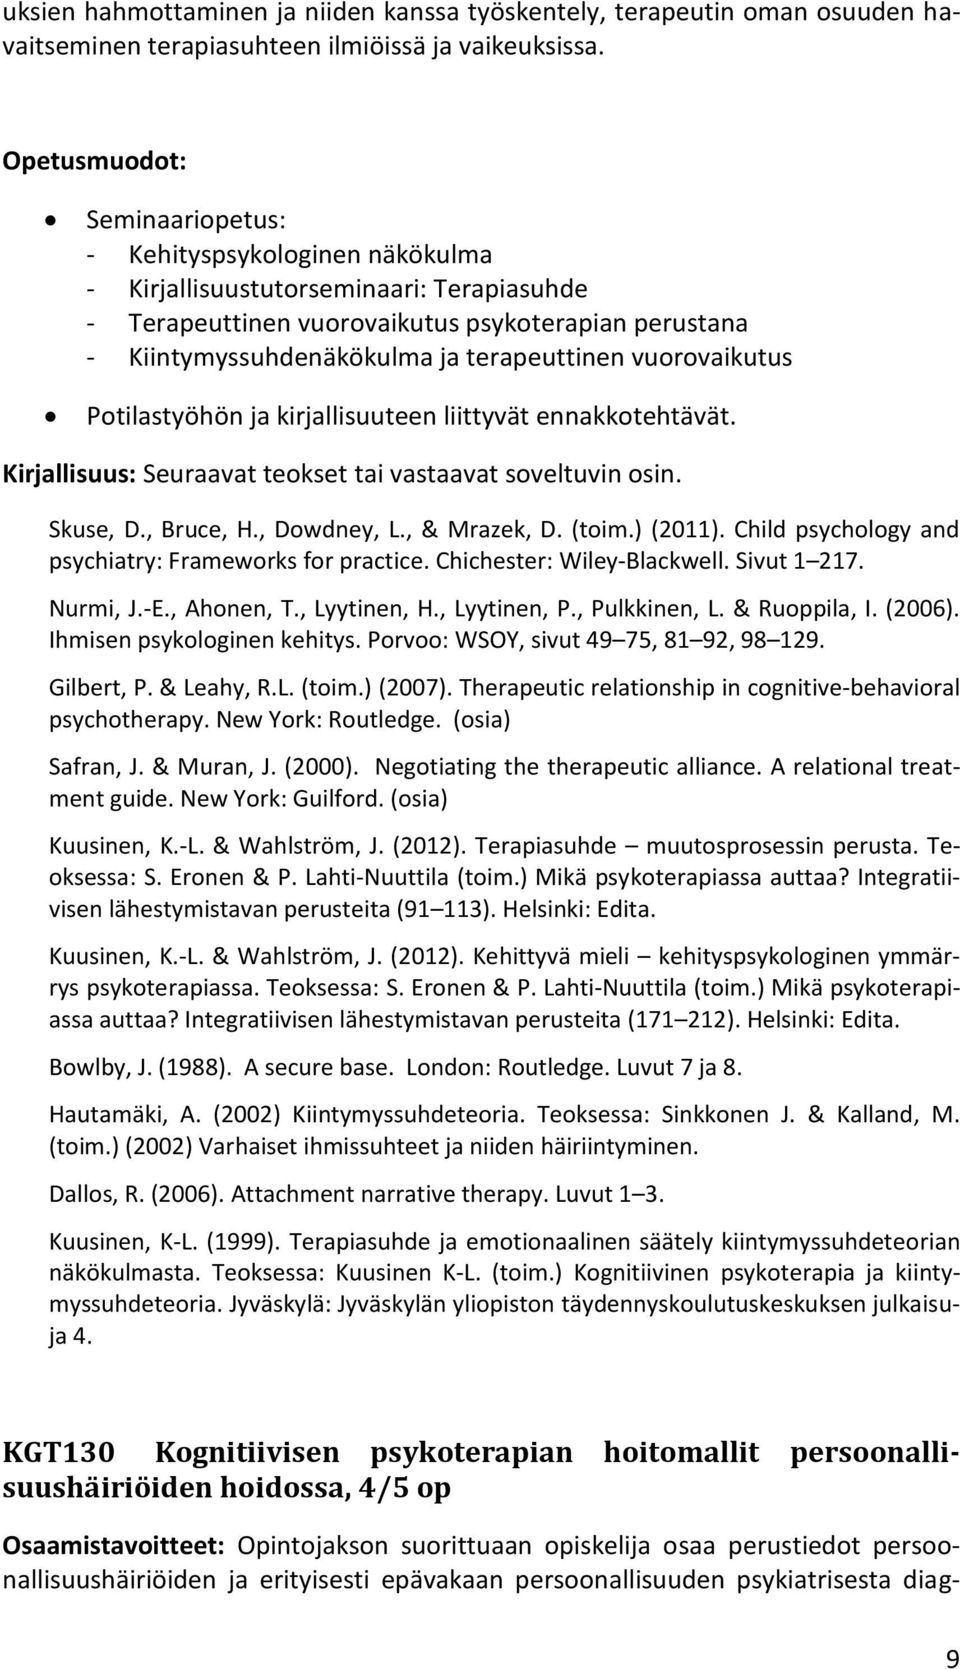 terapeuttinen vuorovaikutus Potilastyöhön ja kirjallisuuteen liittyvät ennakkotehtävät. Kirjallisuus: Seuraavat teokset tai vastaavat soveltuvin osin. Skuse, D., Bruce, H., Dowdney, L., & Mrazek, D.